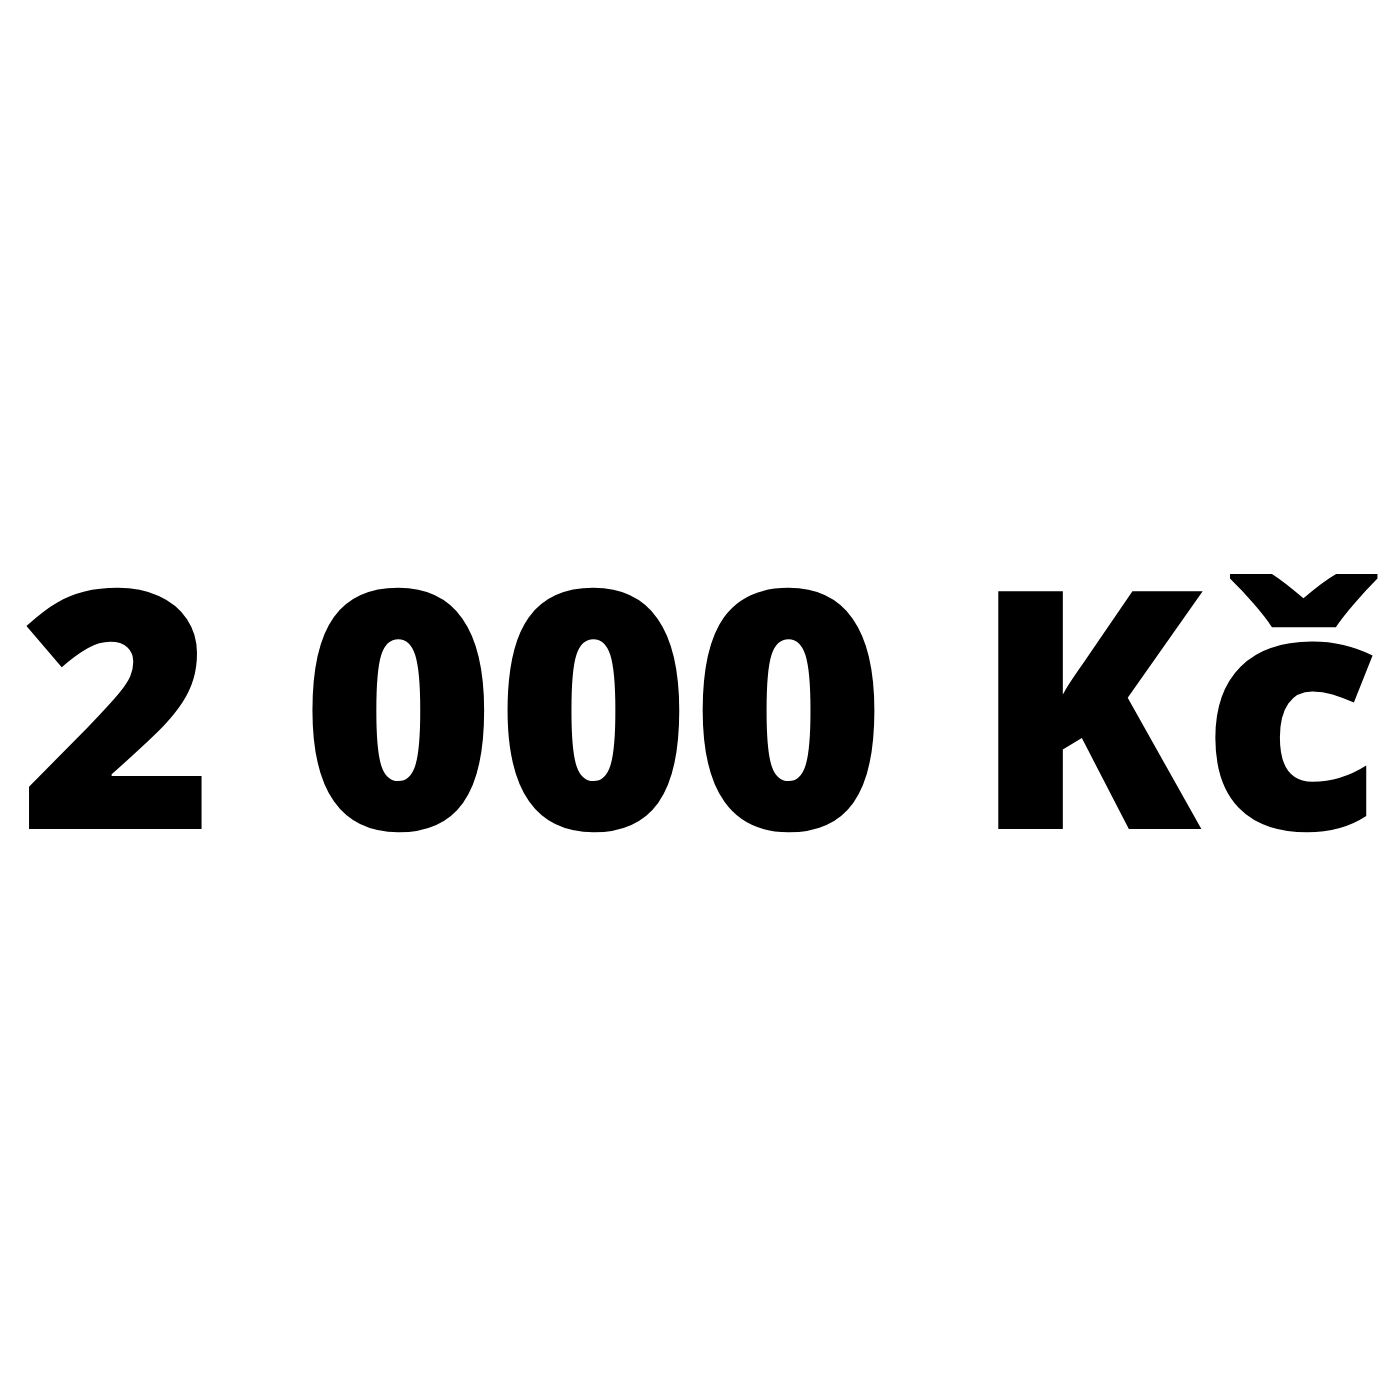 iPouzdro.cz Dárkový poukaz na 2000 Kč